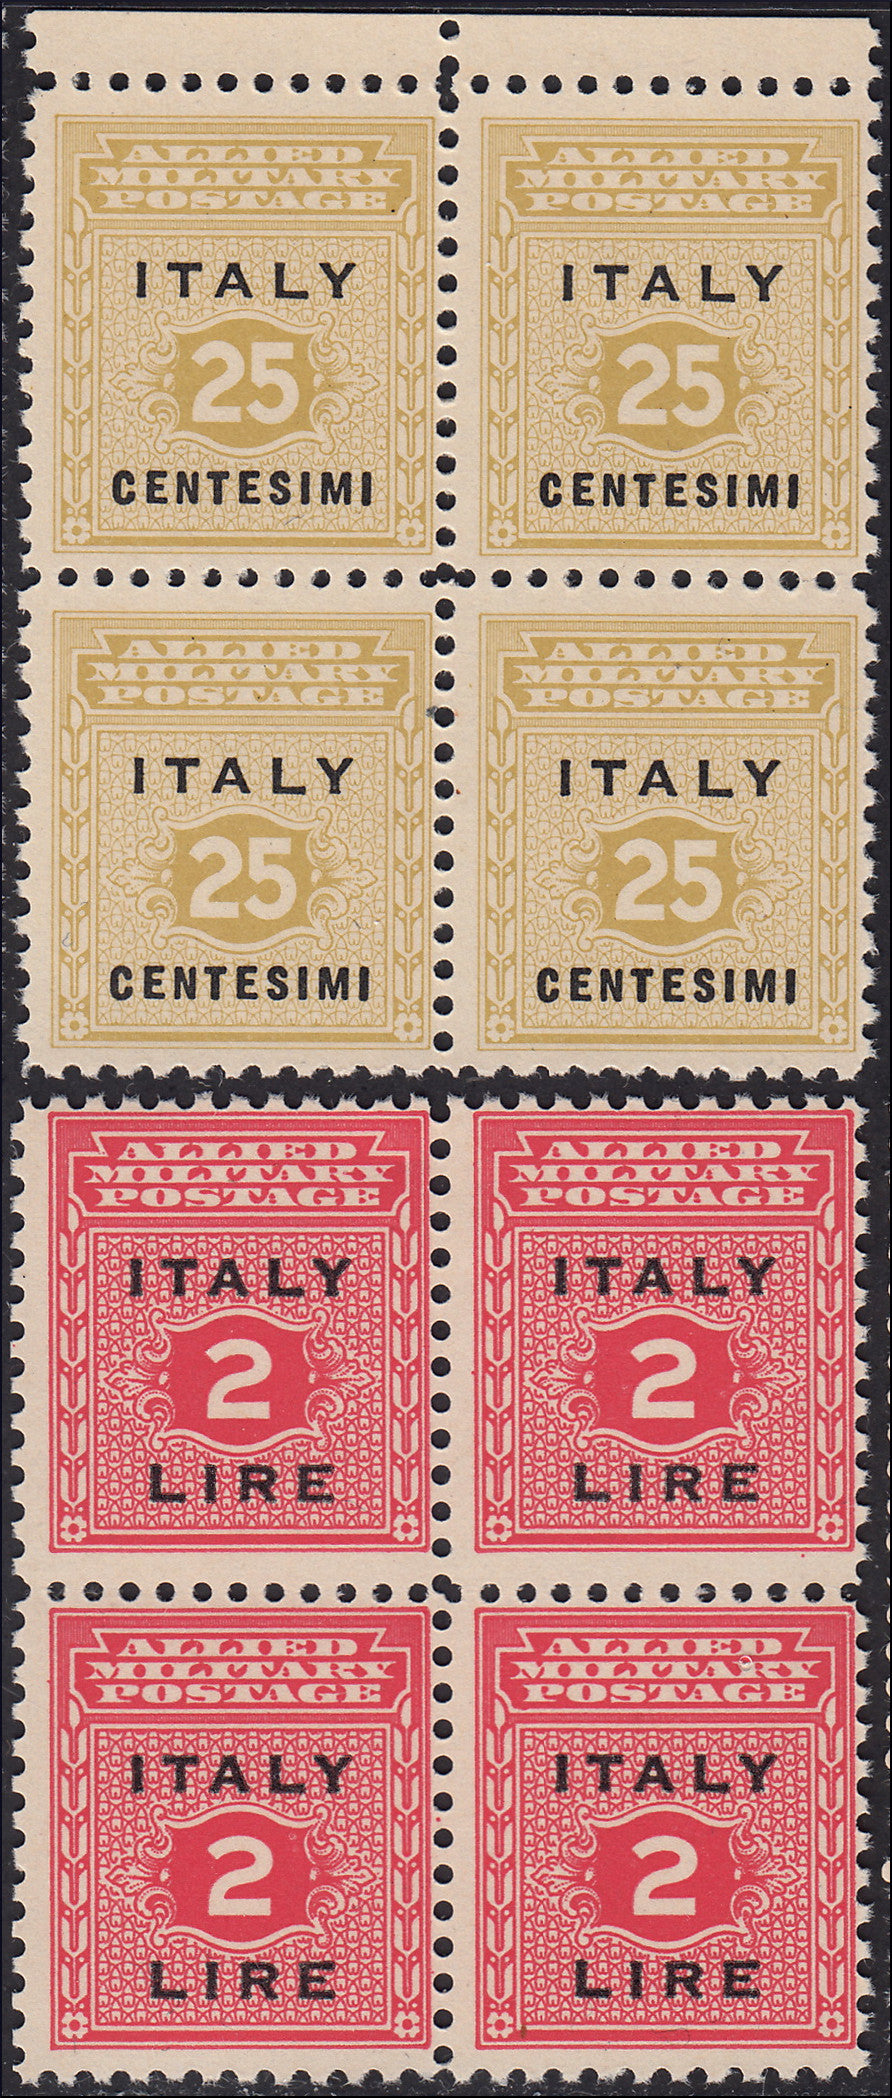 MMOCC221 - 1943 Occupazione Anglo-Americana della Sicilia, serie completa di nove valori in quartine nuova con gomma integra (1/9)